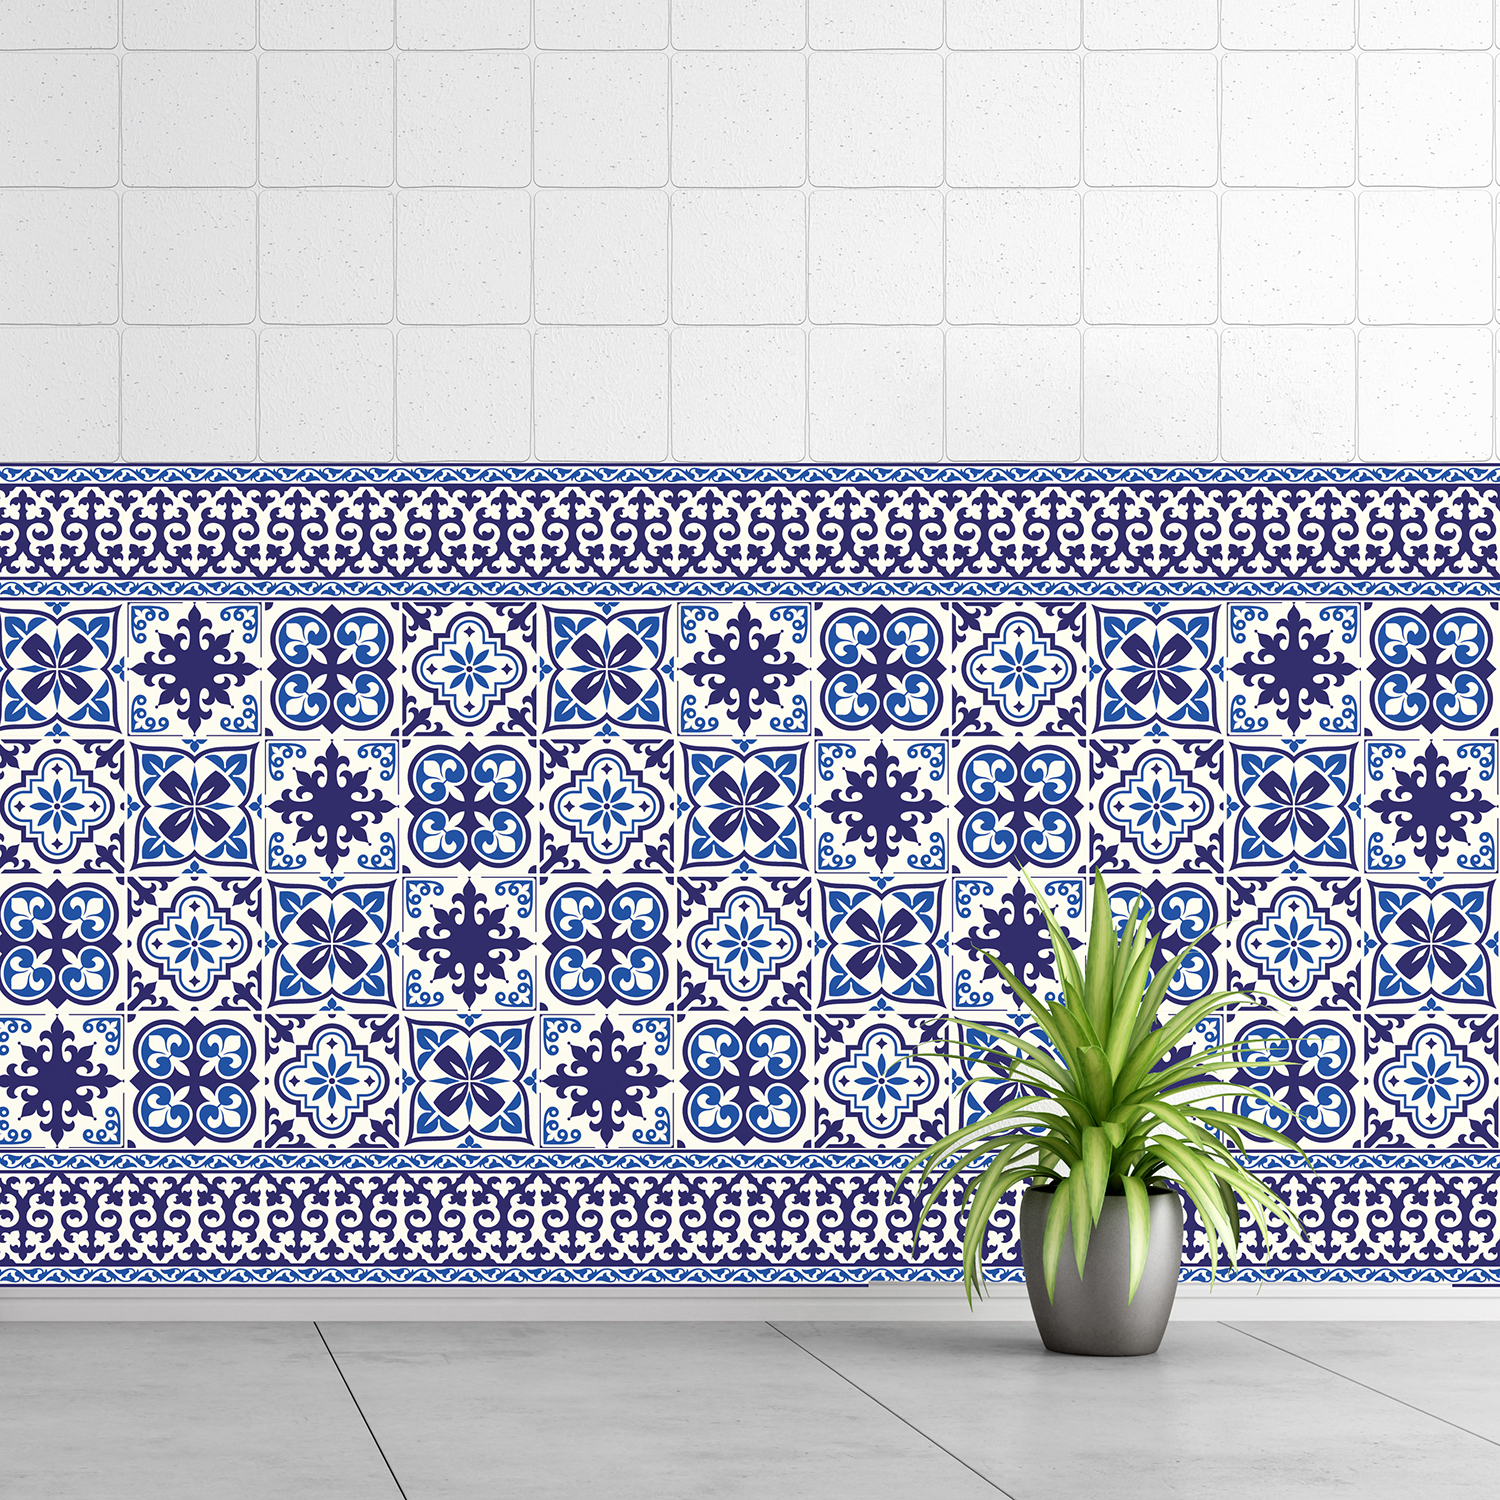 Walplus Blue Tile Granada Wall Sticker Decal Size: 10m x 10cm @ 24pcs